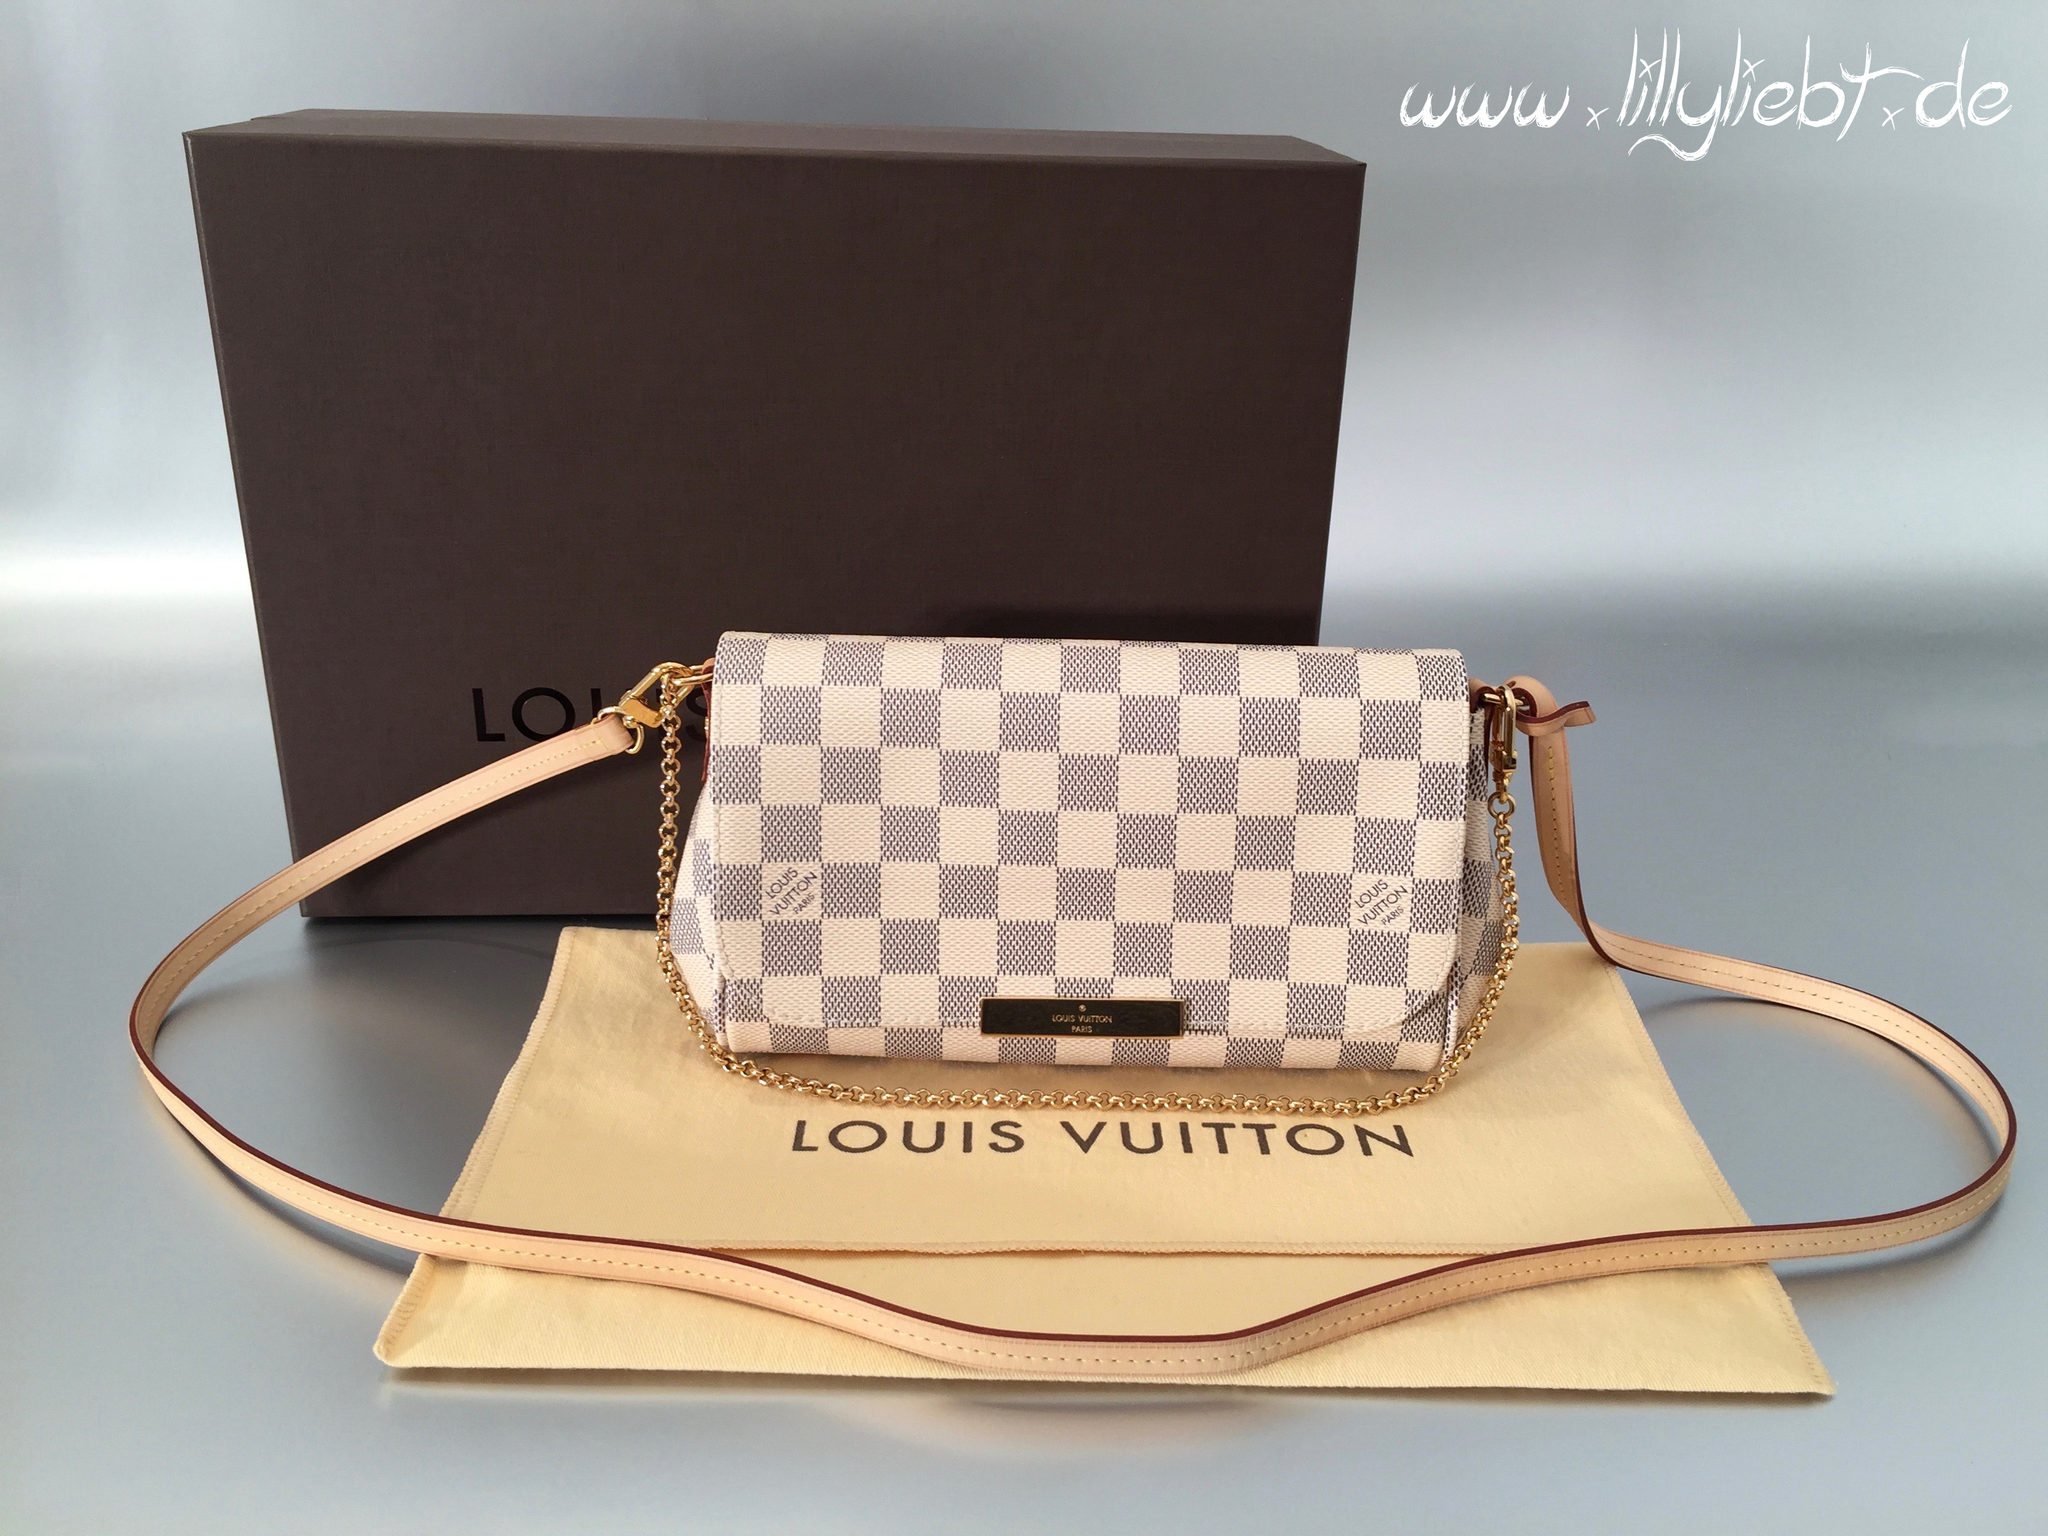 Louis Vuitton, Handtasche, hell, kariert